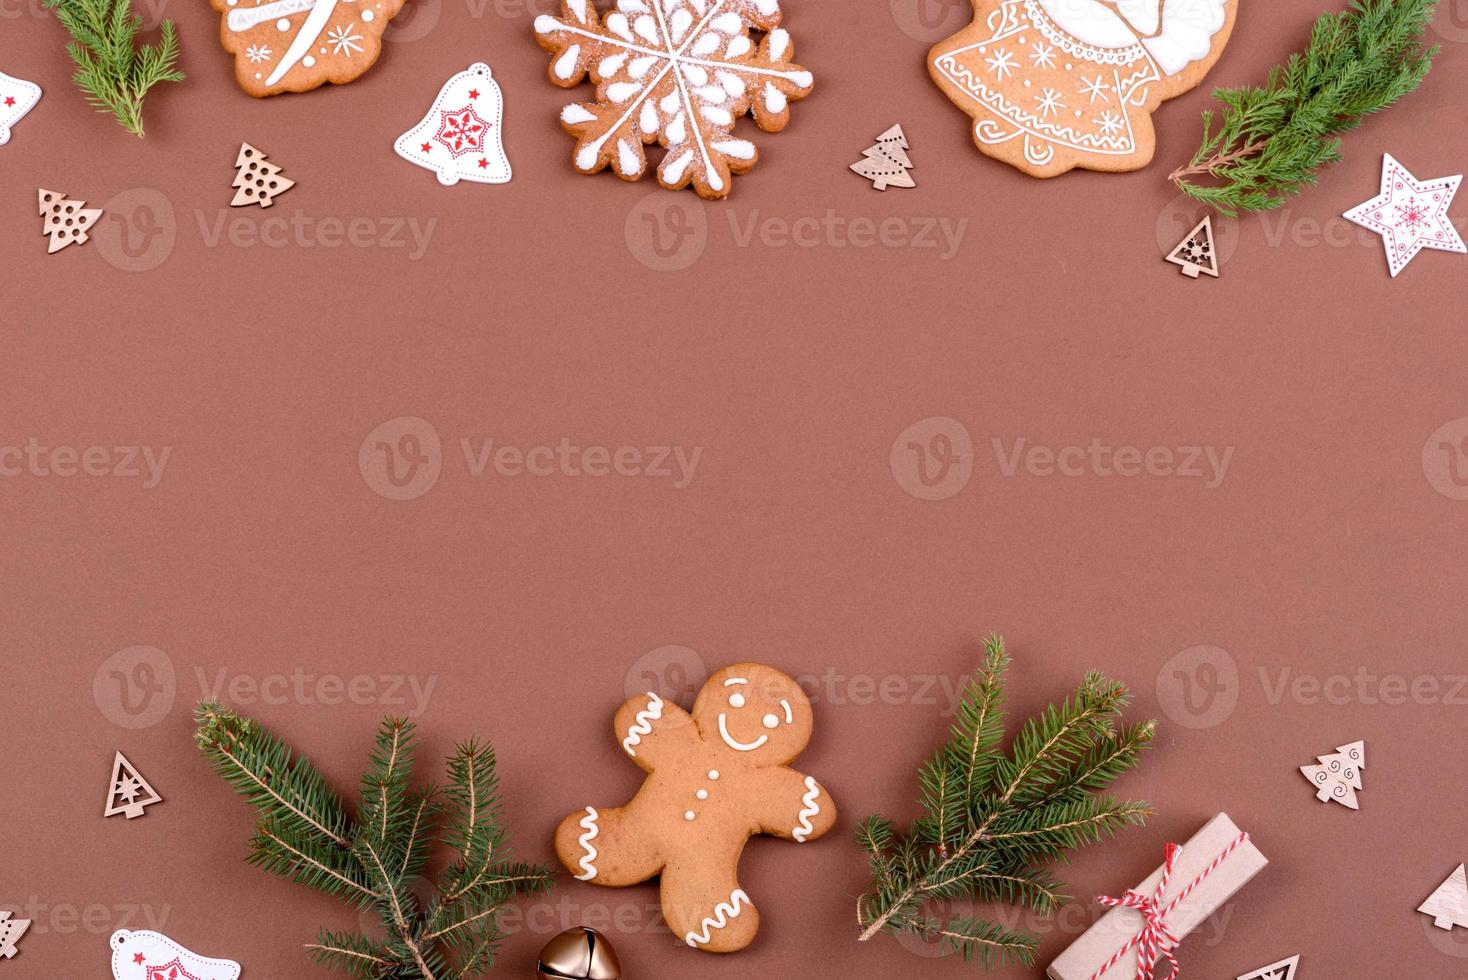 Pan di zenzero festivo natalizio fatto in casa su uno sfondo colorato foto